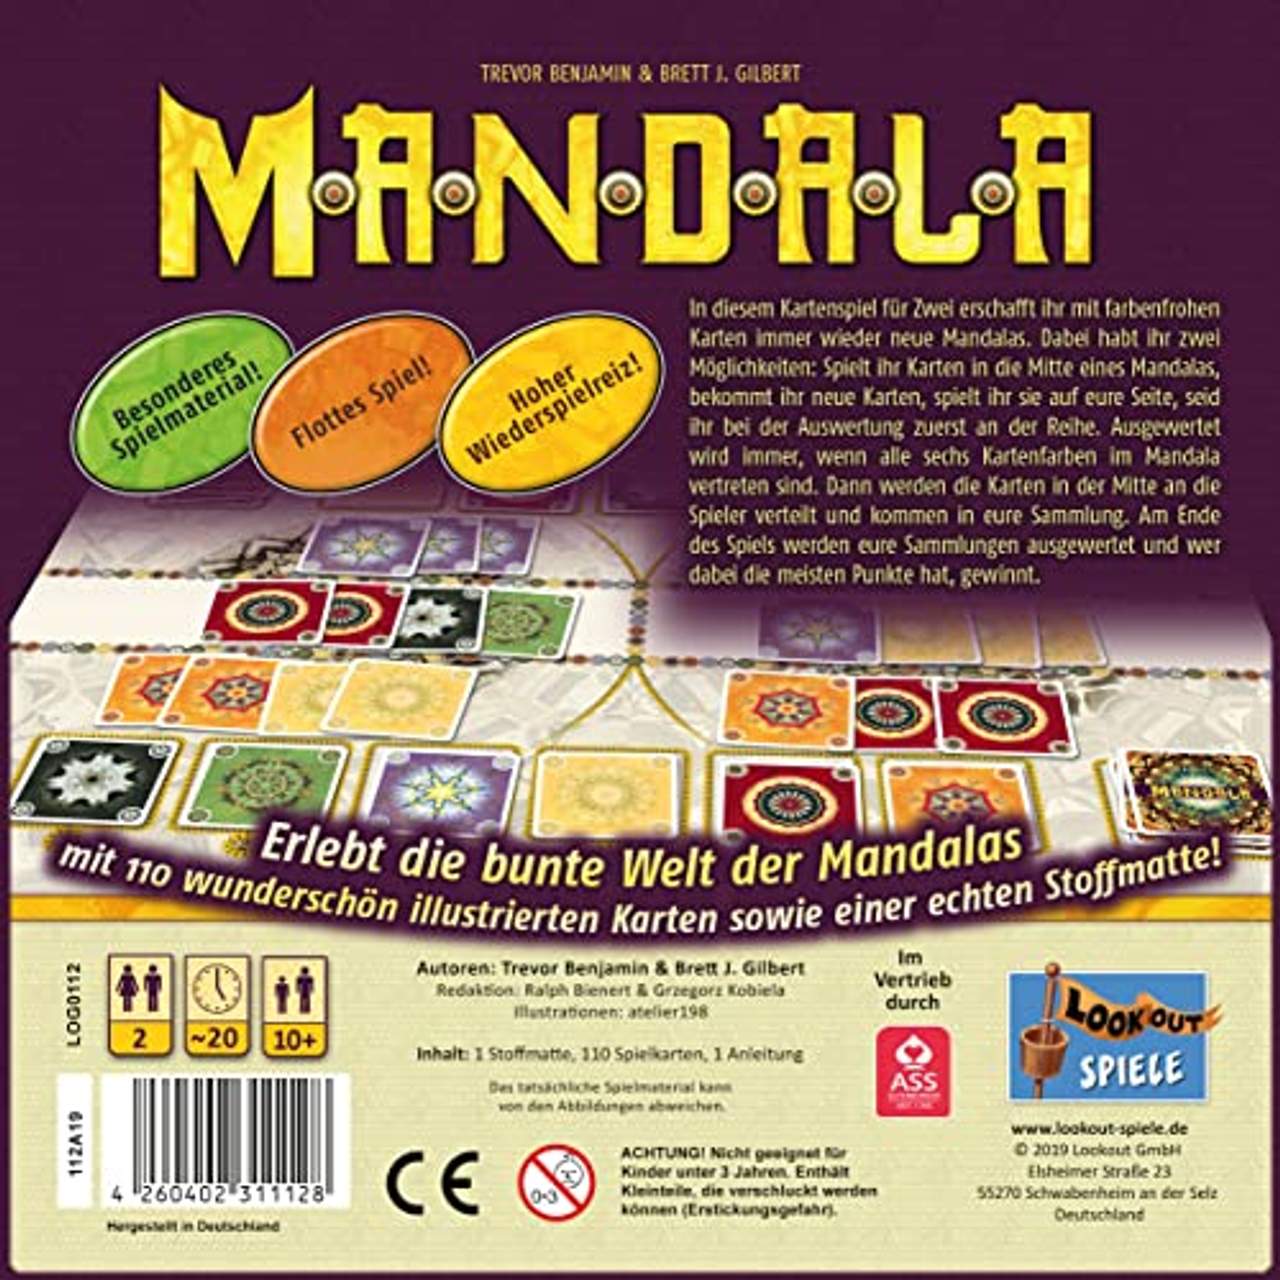 Lookout Games 22160112 Mandala-Das Bunte 2-Personen-Spiel ab 10 Jahren